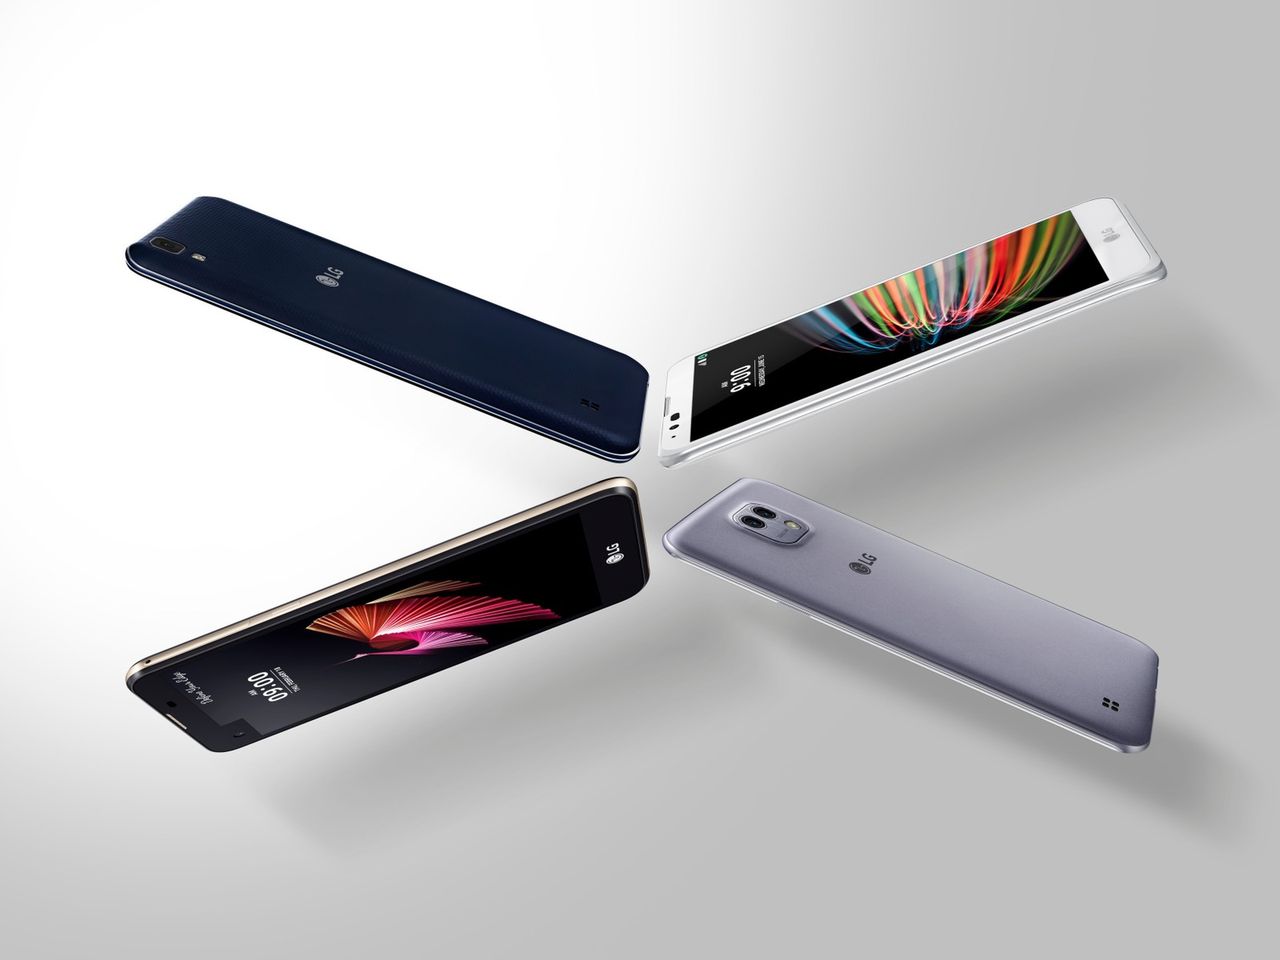 LG X power, X mach, X style i X max - LG zapowiada nowe "specjalistyczne" smartfony